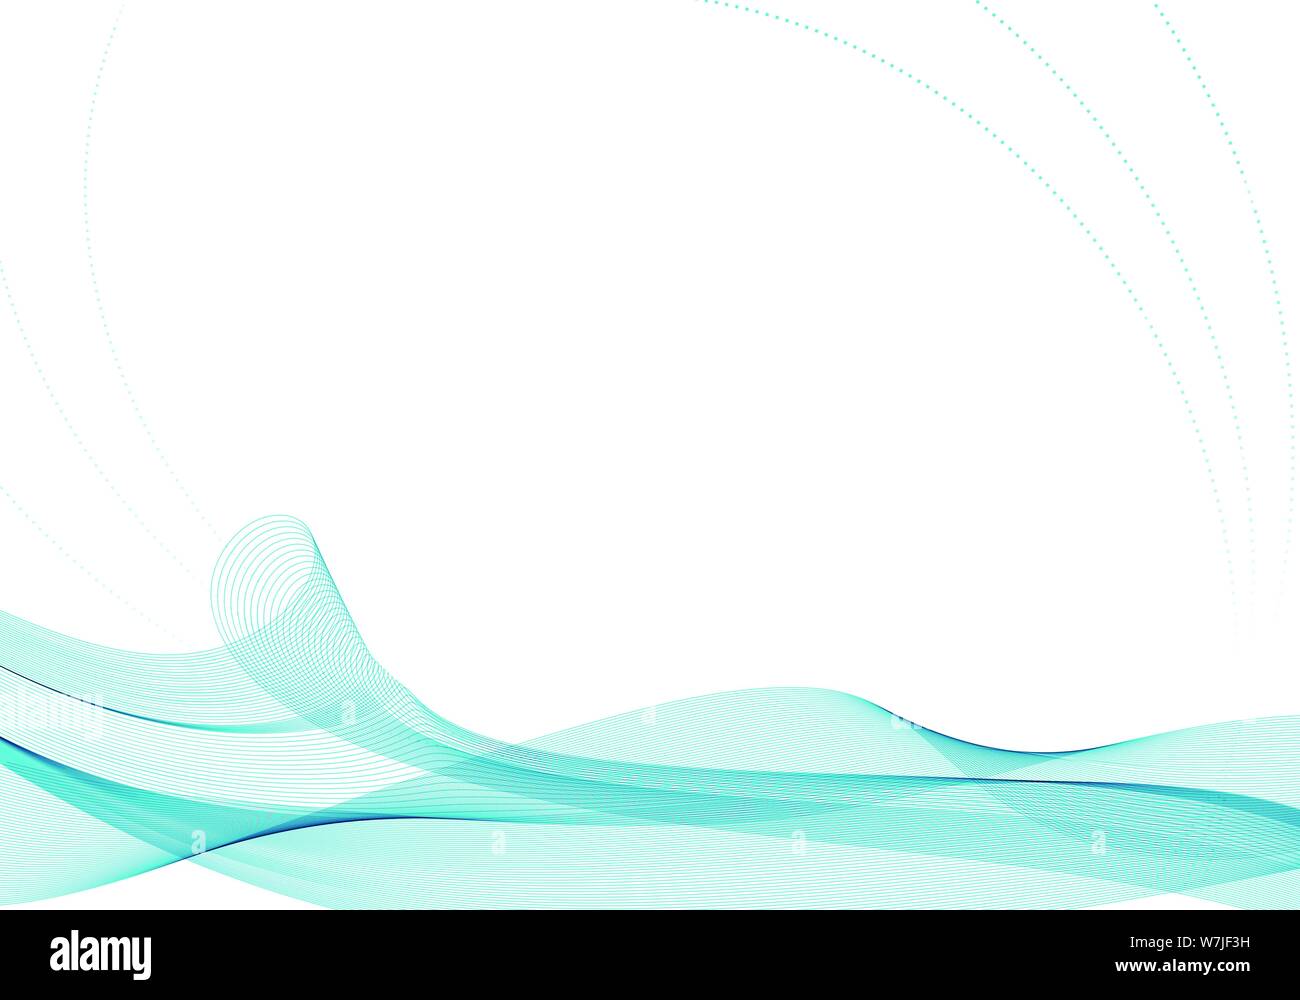 Resumen ondulada. Concepto de cinta de color turquesa con decoración curva punteada, sobre fondo blanco aisladas. Ilustración vectorial. Ilustración del Vector